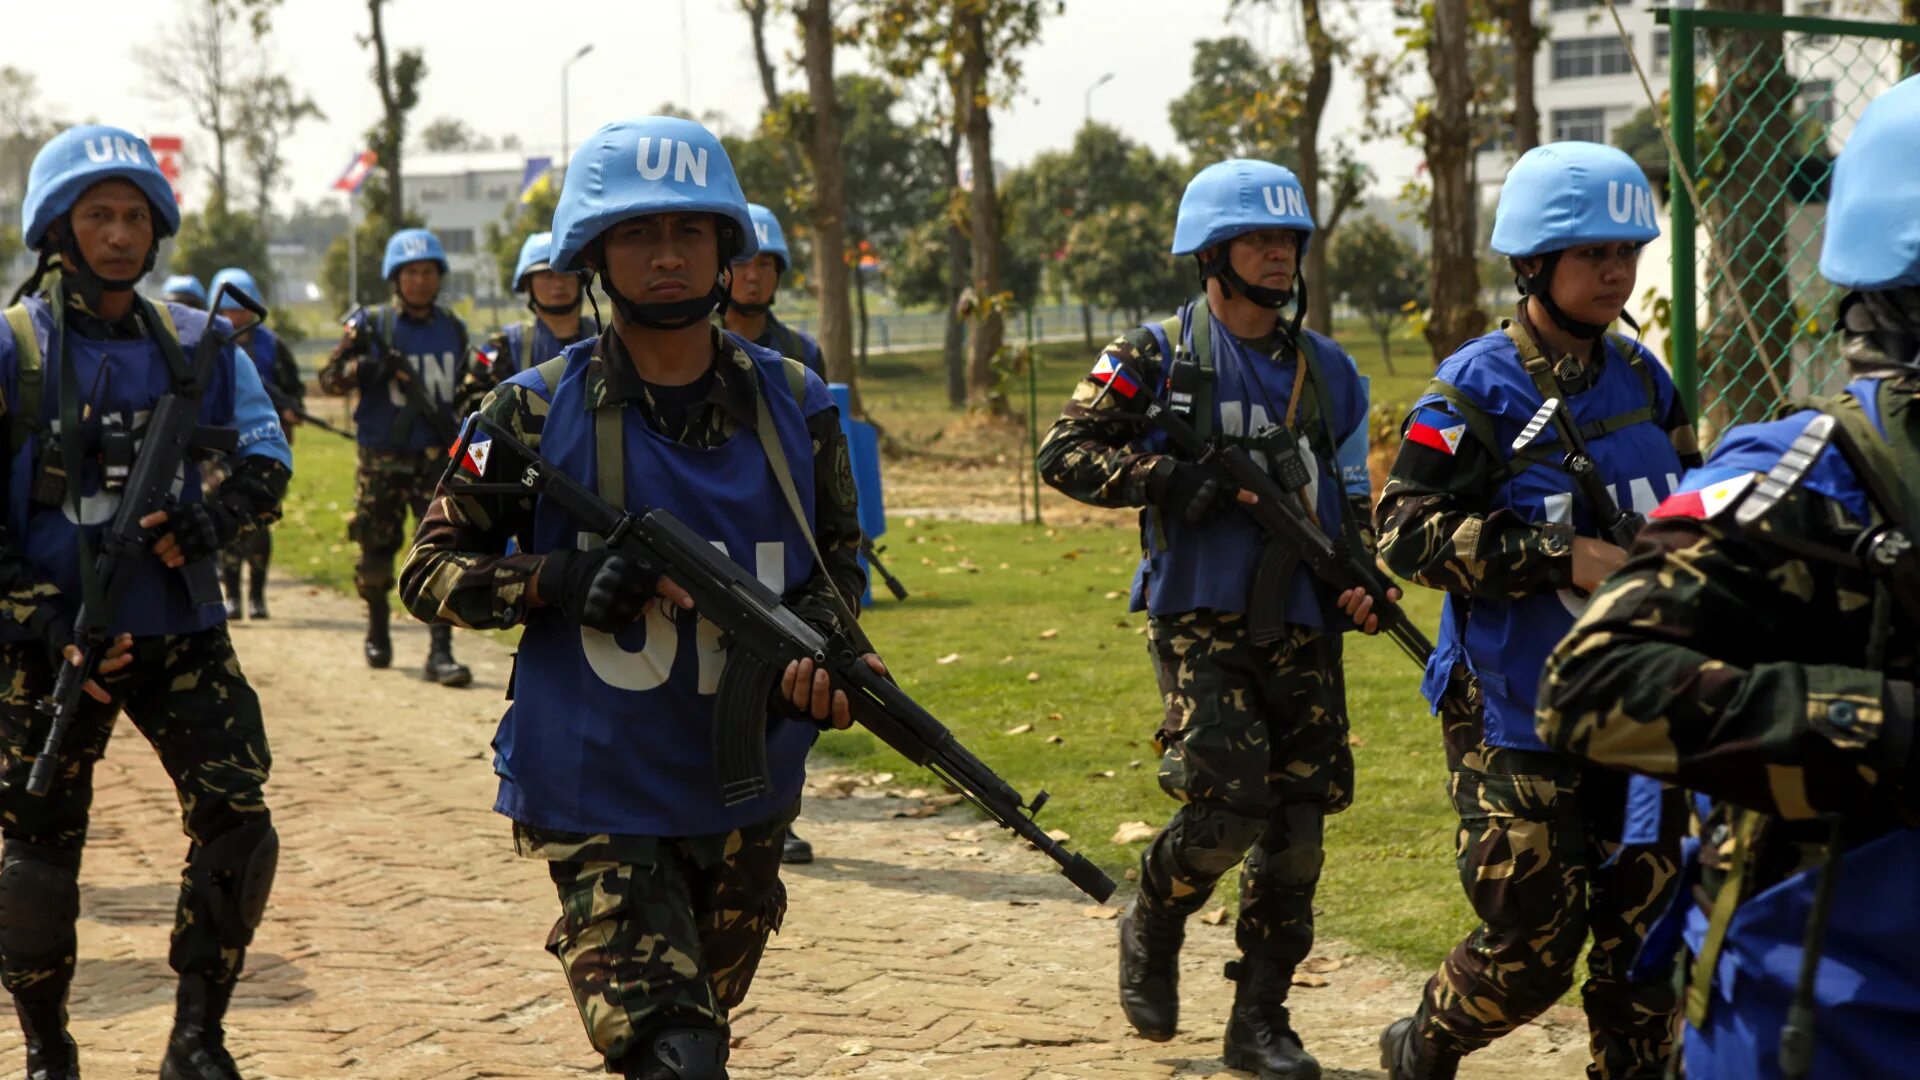 Рабочие оон. Одежда ООН. Миротворцы ООН. Филиппинская морская пехота. ООН форма одежды.